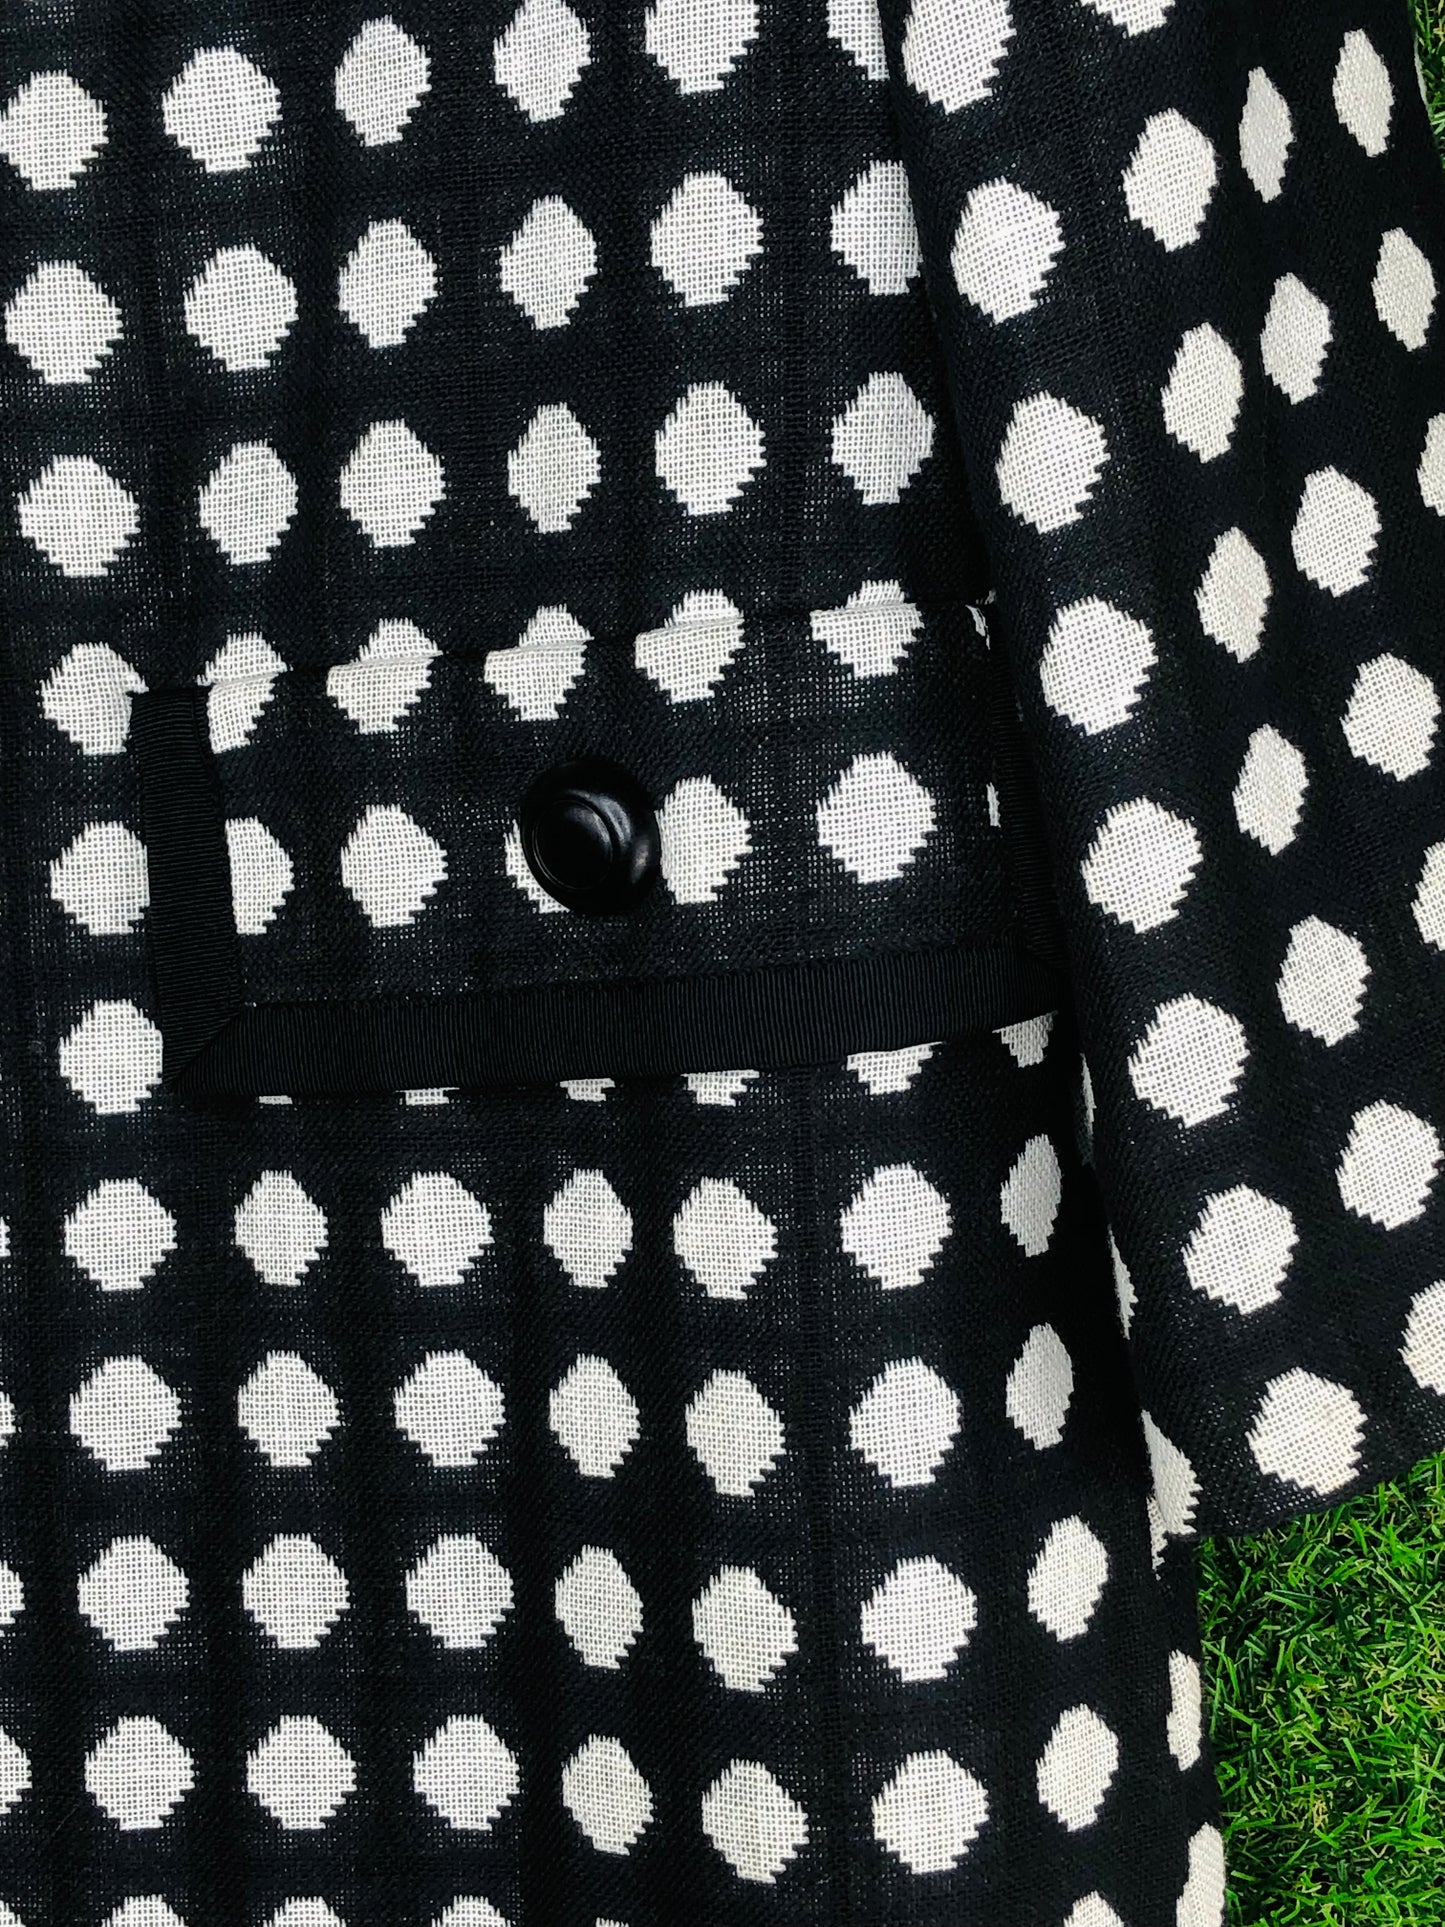 1960's Iconic 'Marlo Thomas Style' Black and White Polka Dot Coat